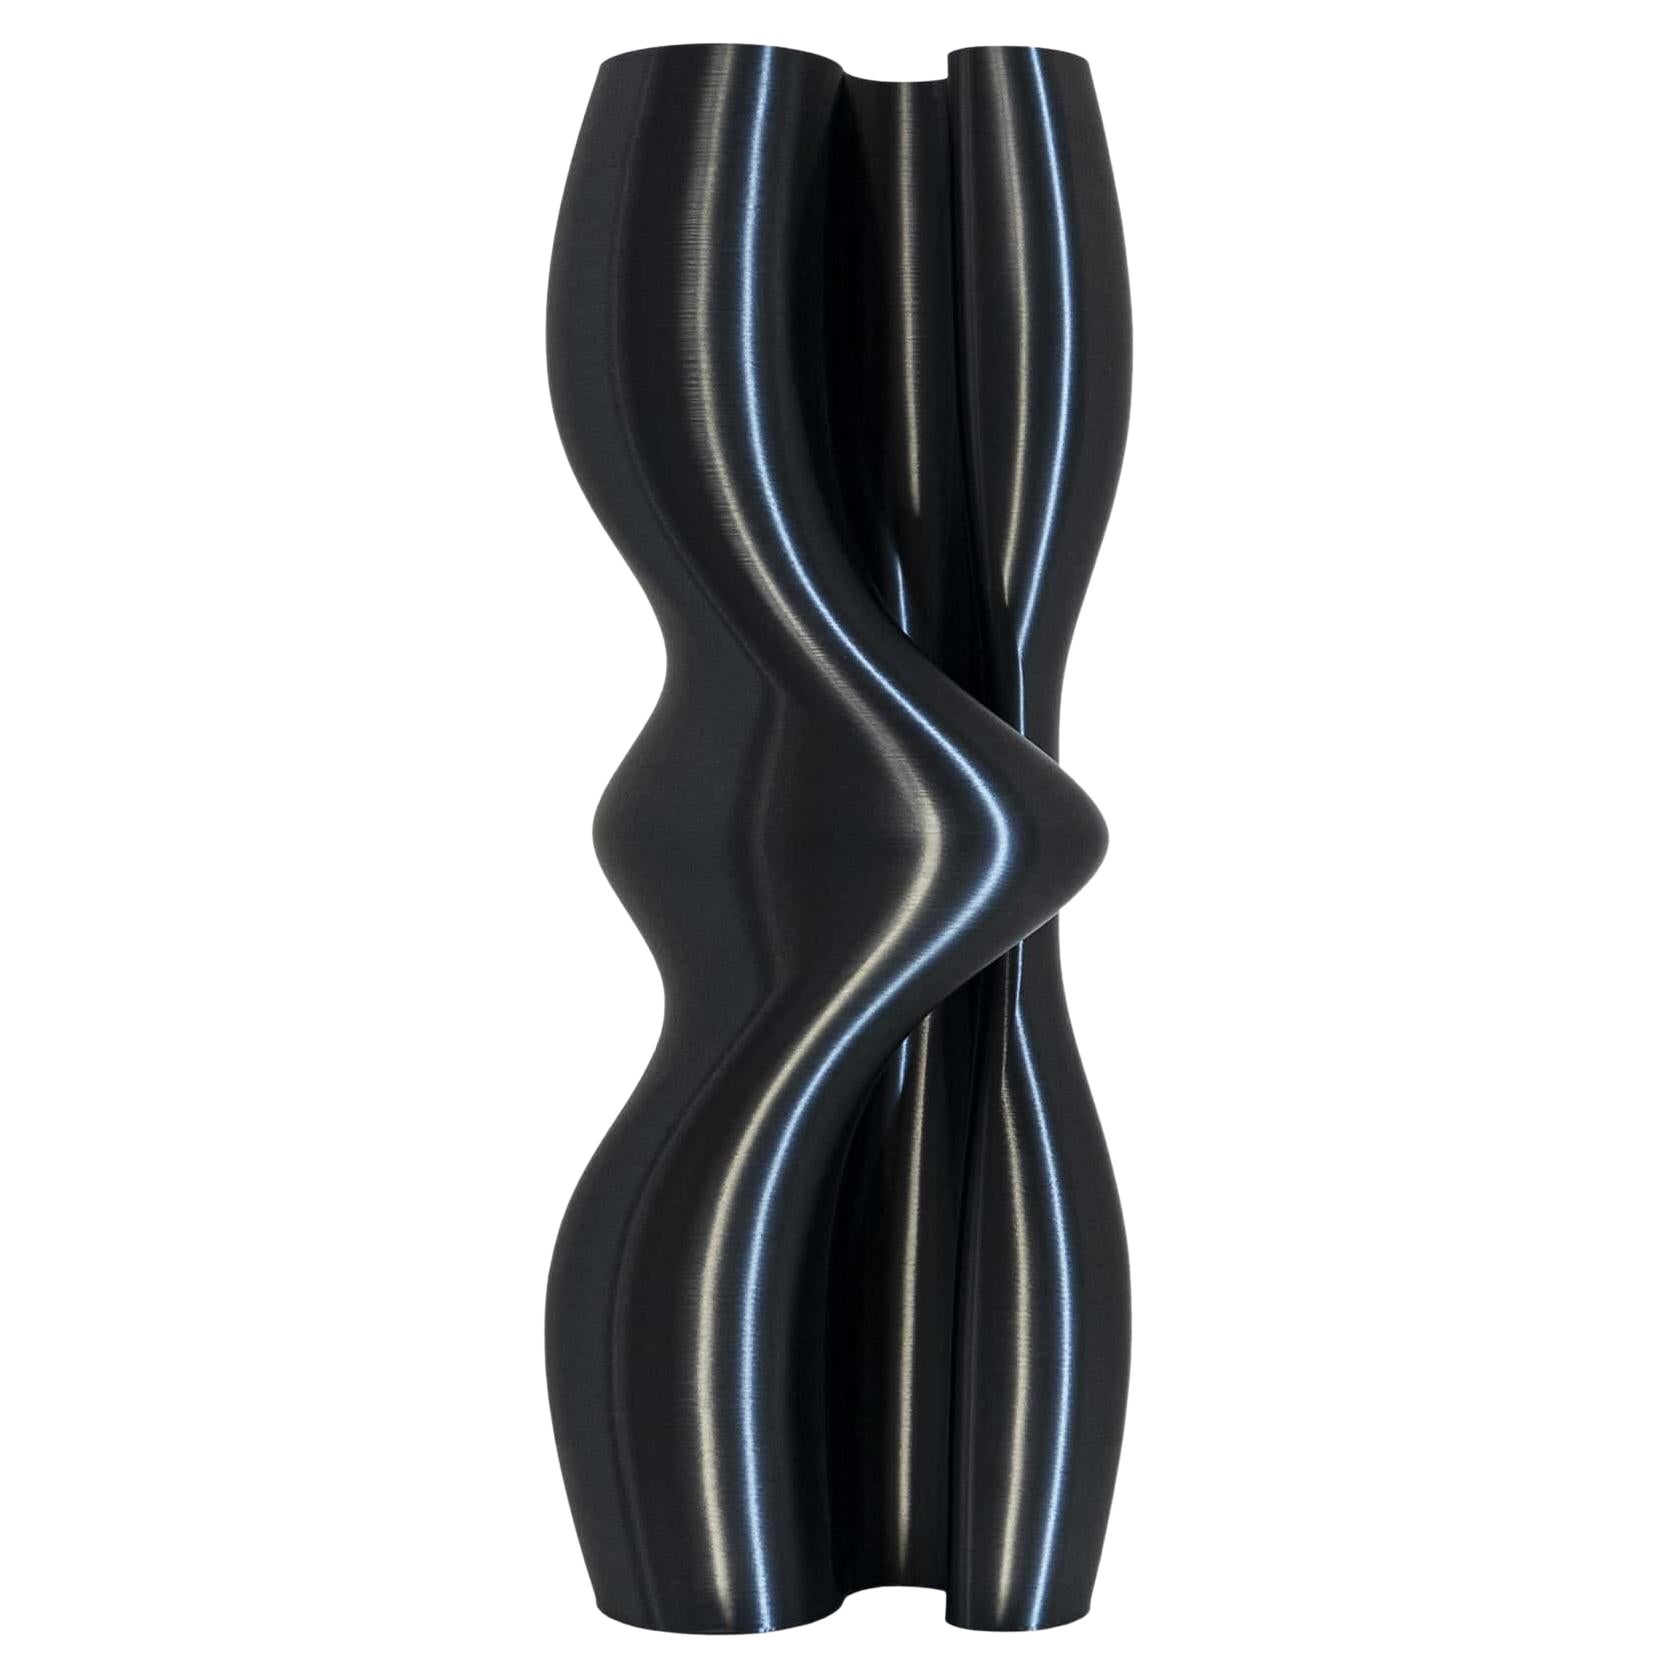 Vase-sculpture contemporain noir « Feeling » durable